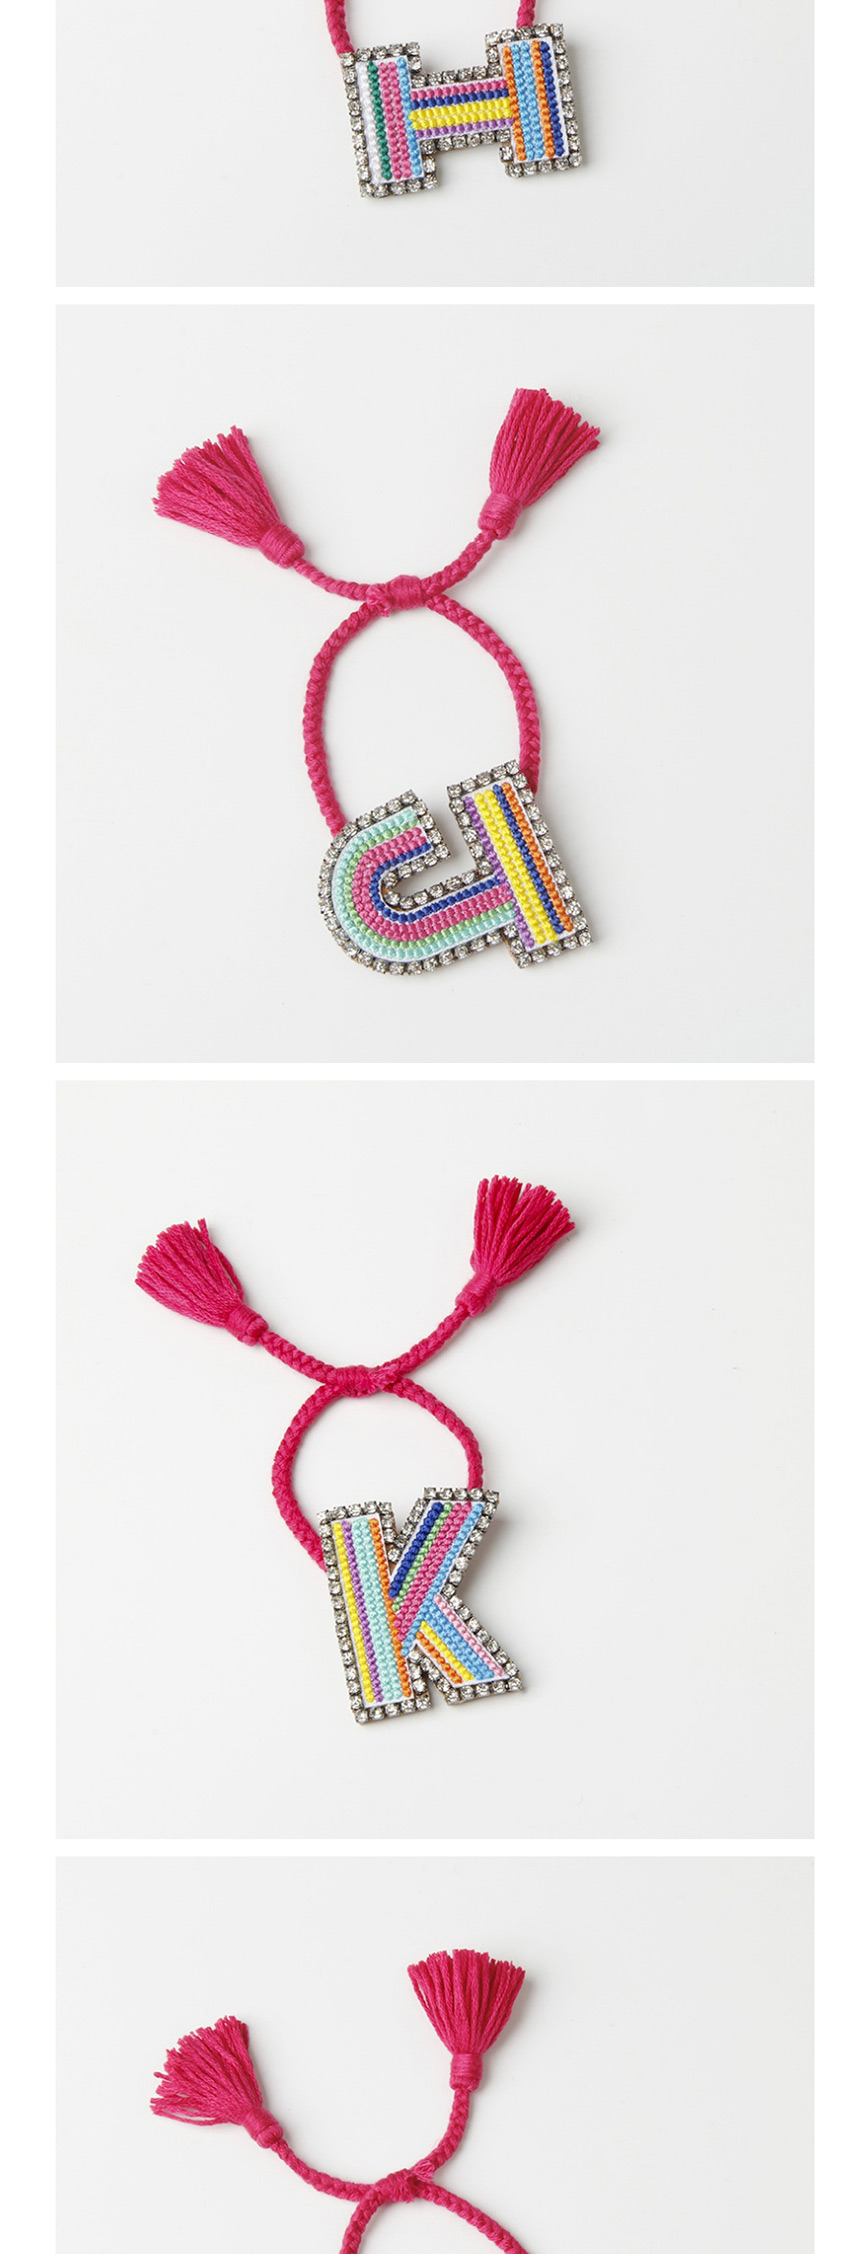 Fashion Jcolor Embroidered Woven Adjustable Crystal Alphabet Bracelet,Fashion Bracelets